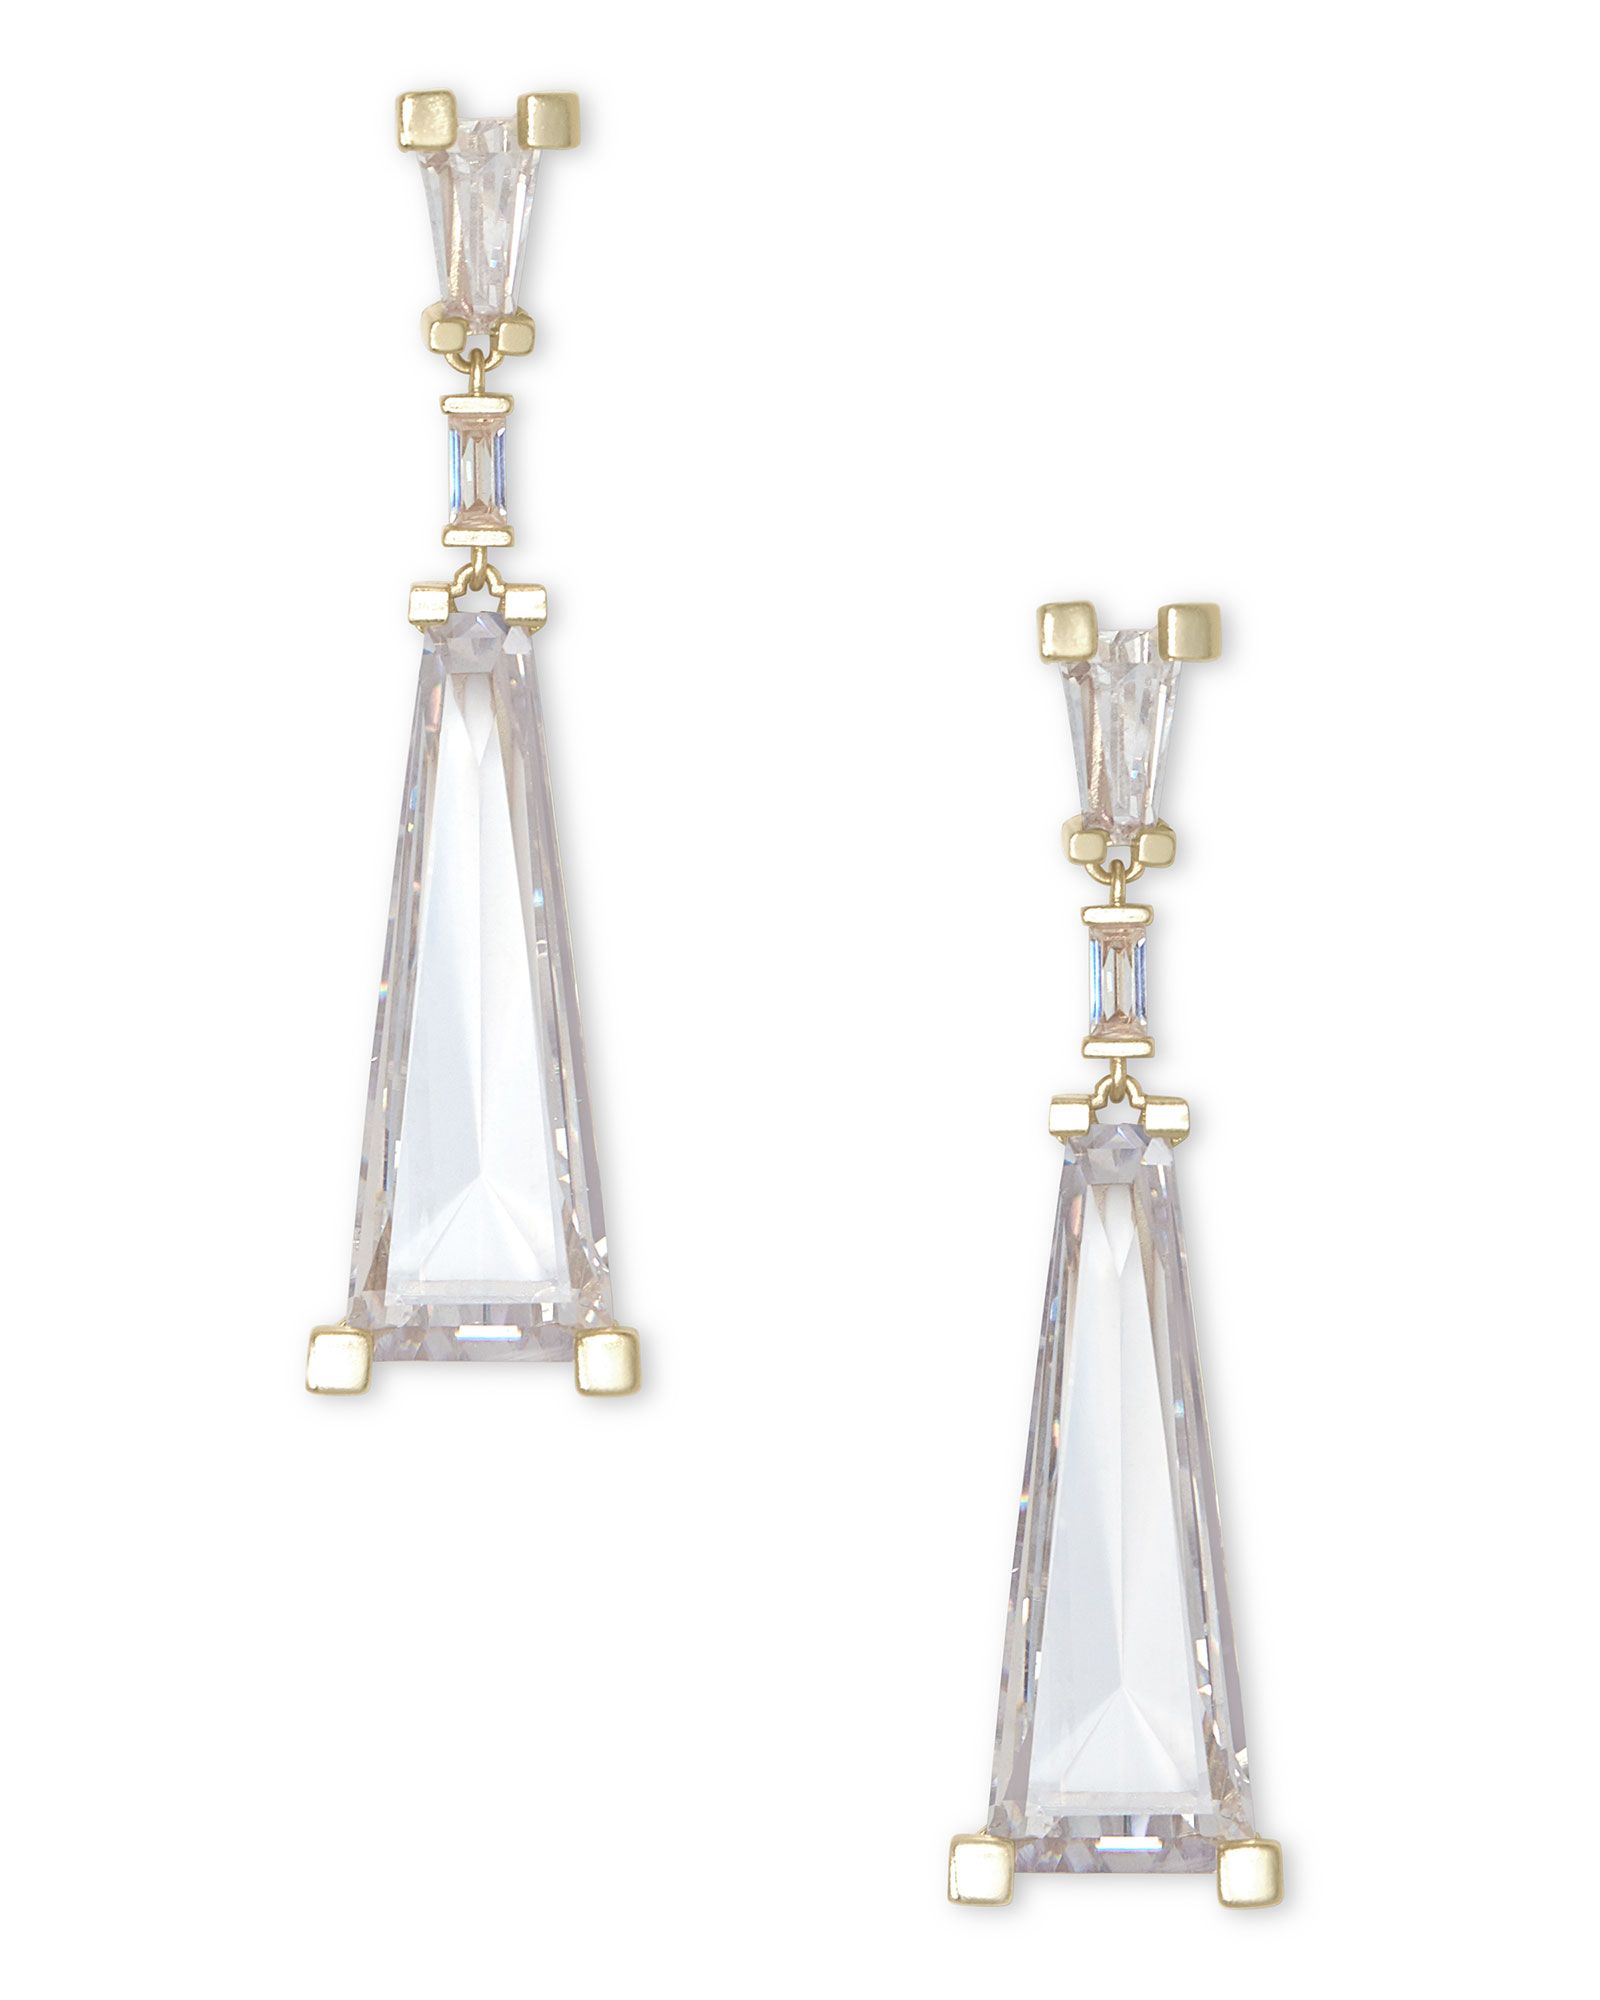 Everdeen Gold Statement Earrings in Lustre Glass | Kendra Scott